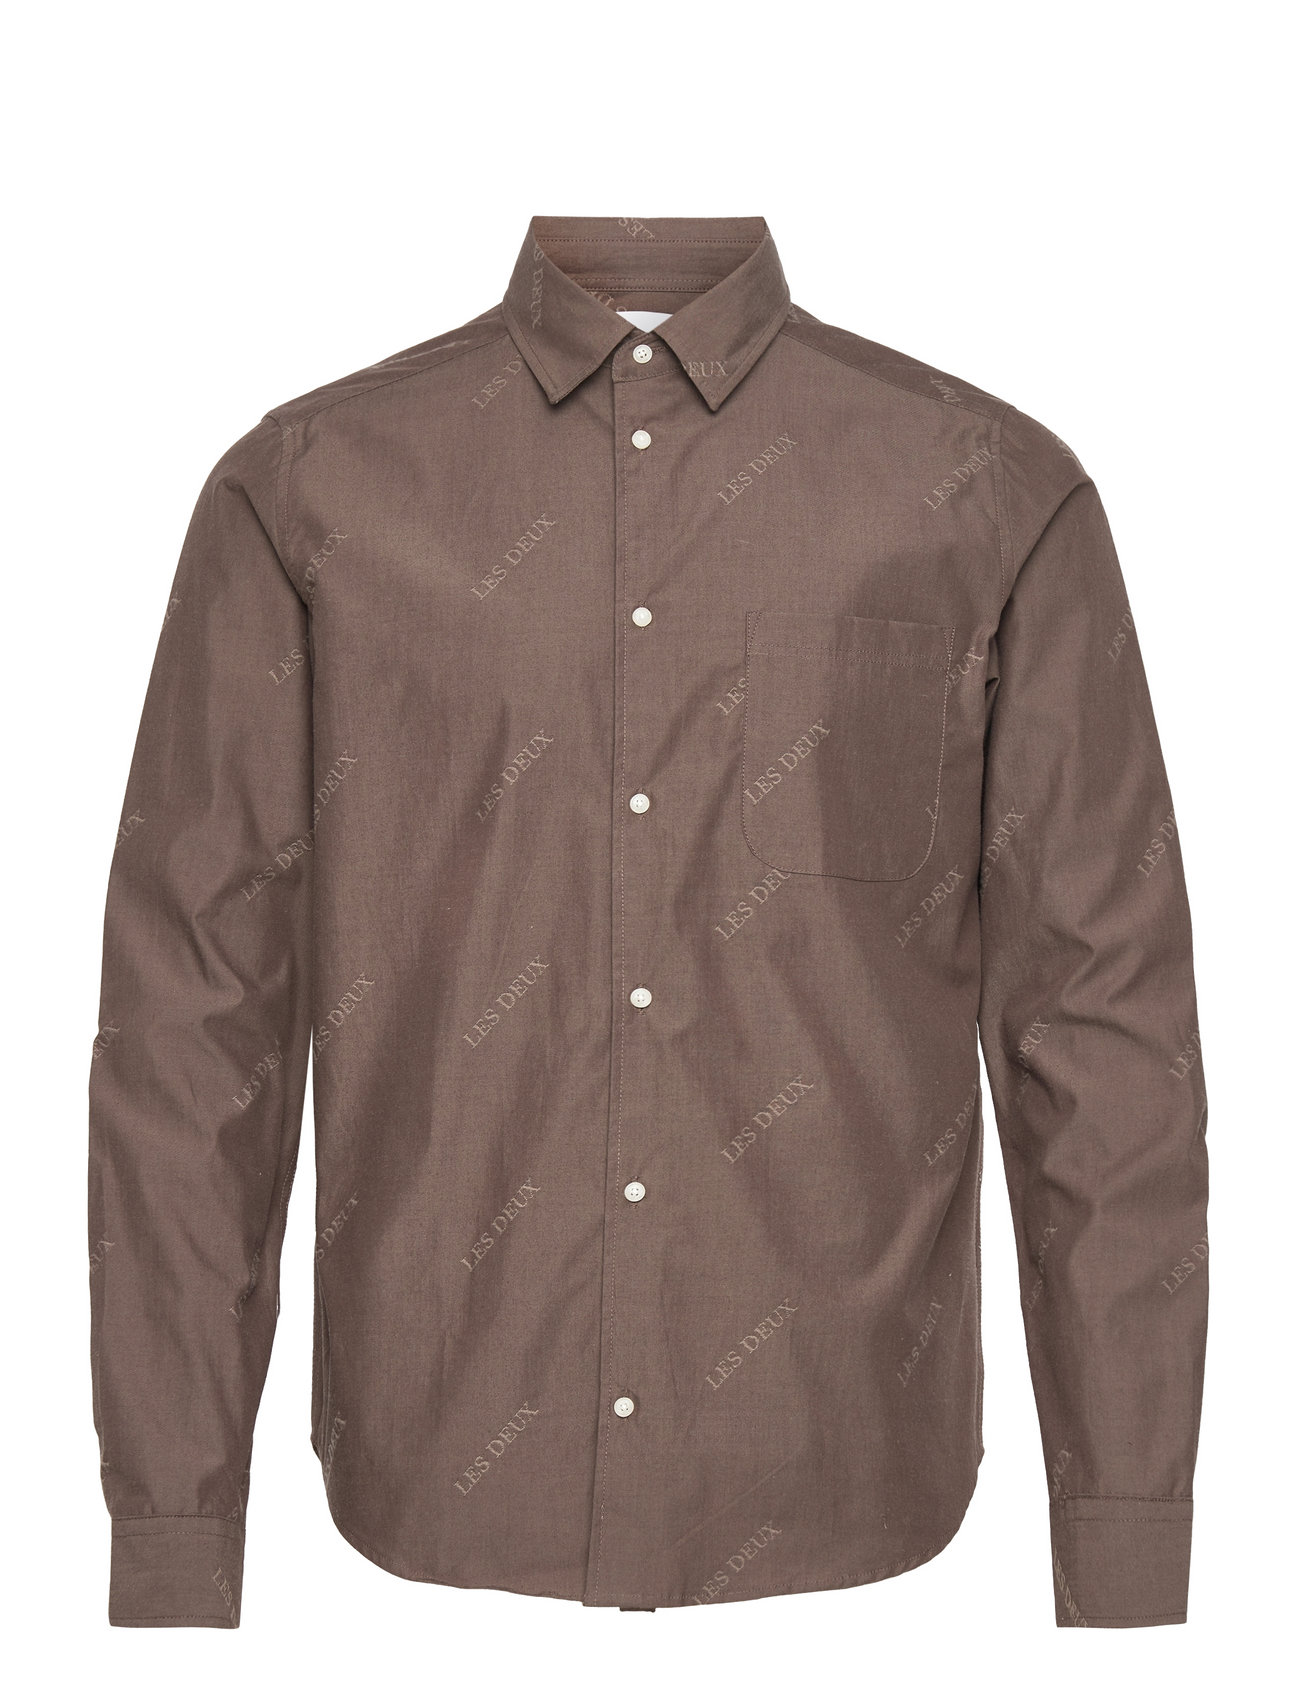 Les Deux Jacquard Flannel Shirt Tops Shirts Casual Brown Les Deux